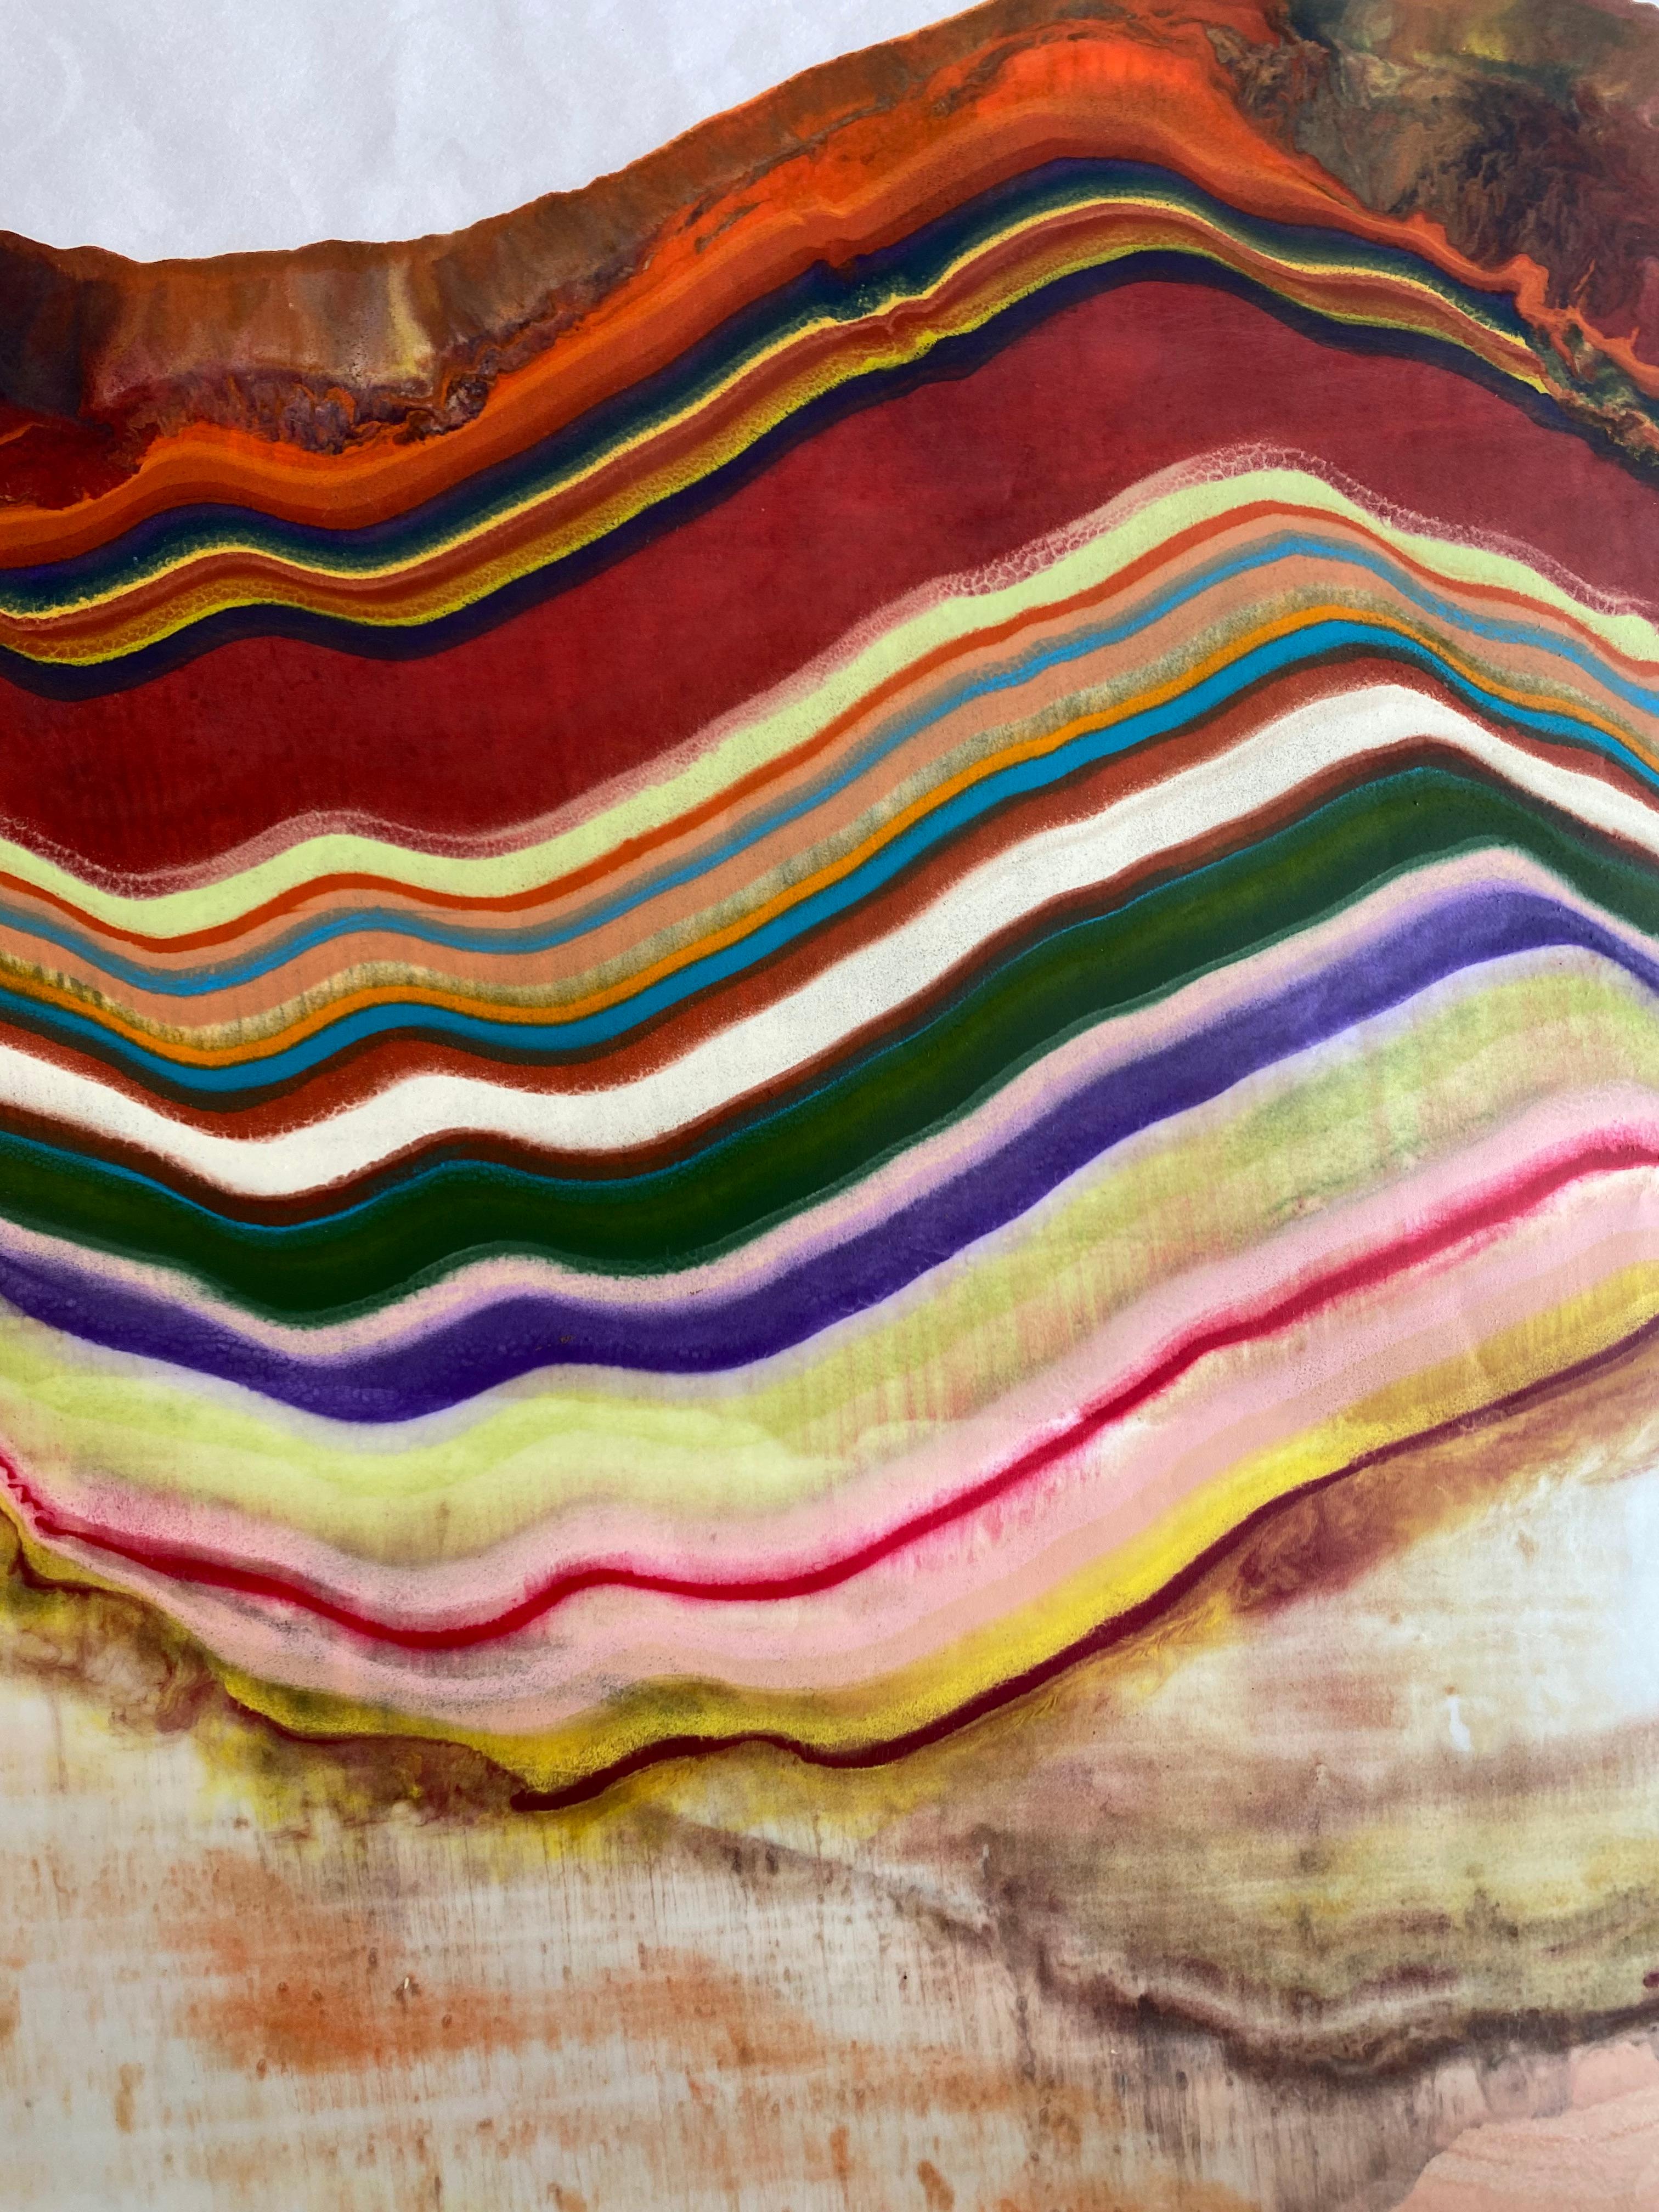 Ex Uno Plures 13 de Laura Moriarty est un monotype encaustique multicolore sur papier kozo. Des couches de cire d'abeille pigmentée sur du papier léger créent une composition ondulante suggérant des couches de la croûte terrestre et des formations